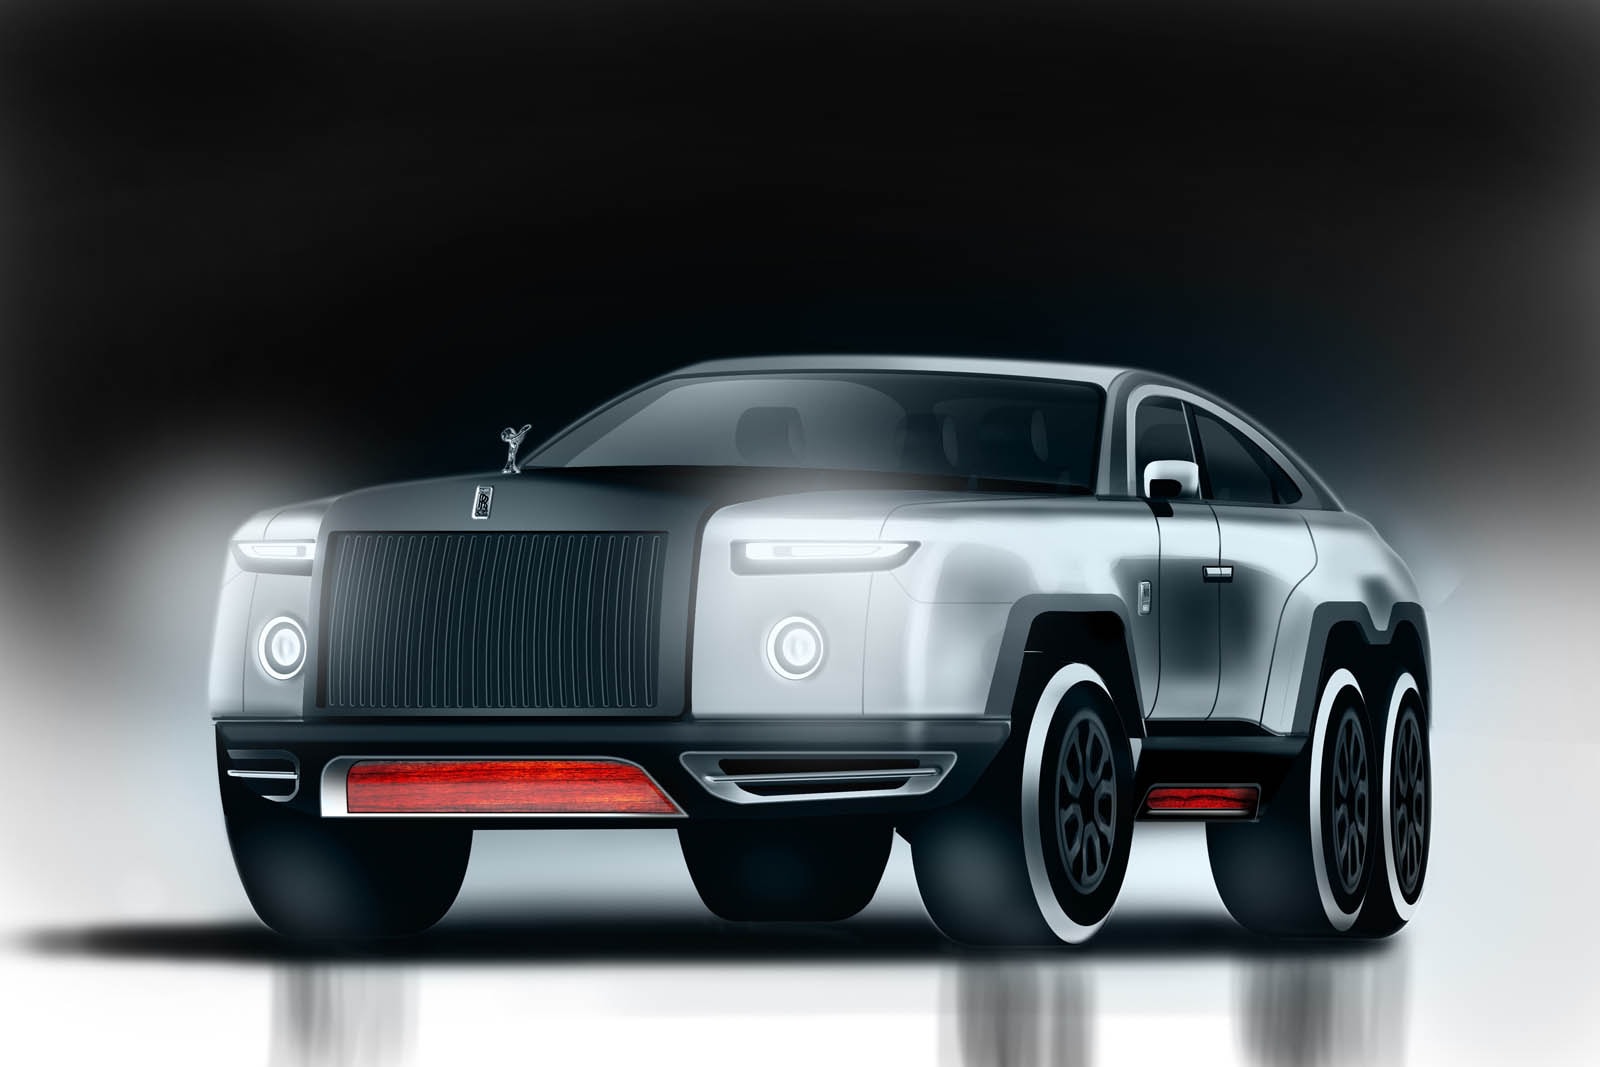 Rolls-Royce のファントムがまさかの 6x6 SUV に大変身!? 美しいフォルムを維持しながら景観を損なうことなくクロスカントリーヴィークルのエッセンスを注入 ロールス・ロイス 高級車 Phantom コンセプト